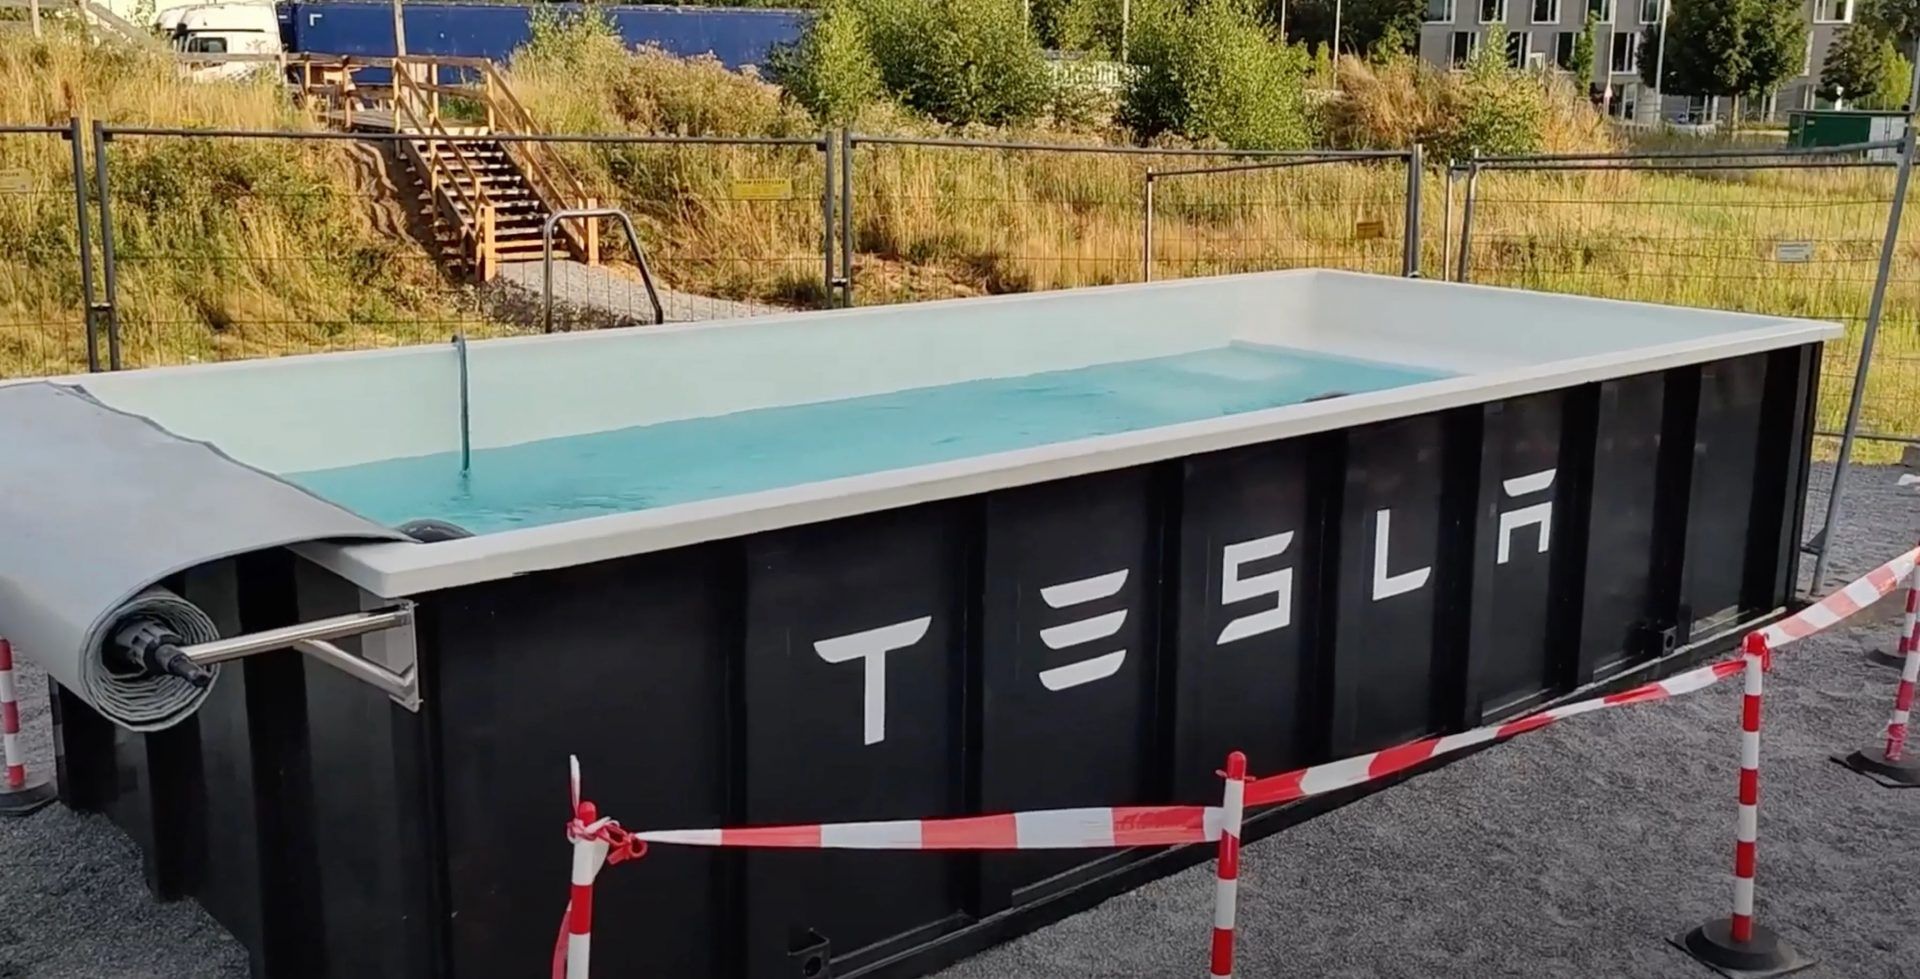 Η Tesla τοποθέτησε πισίνα σε σταθμό ταχυφορτιστών!